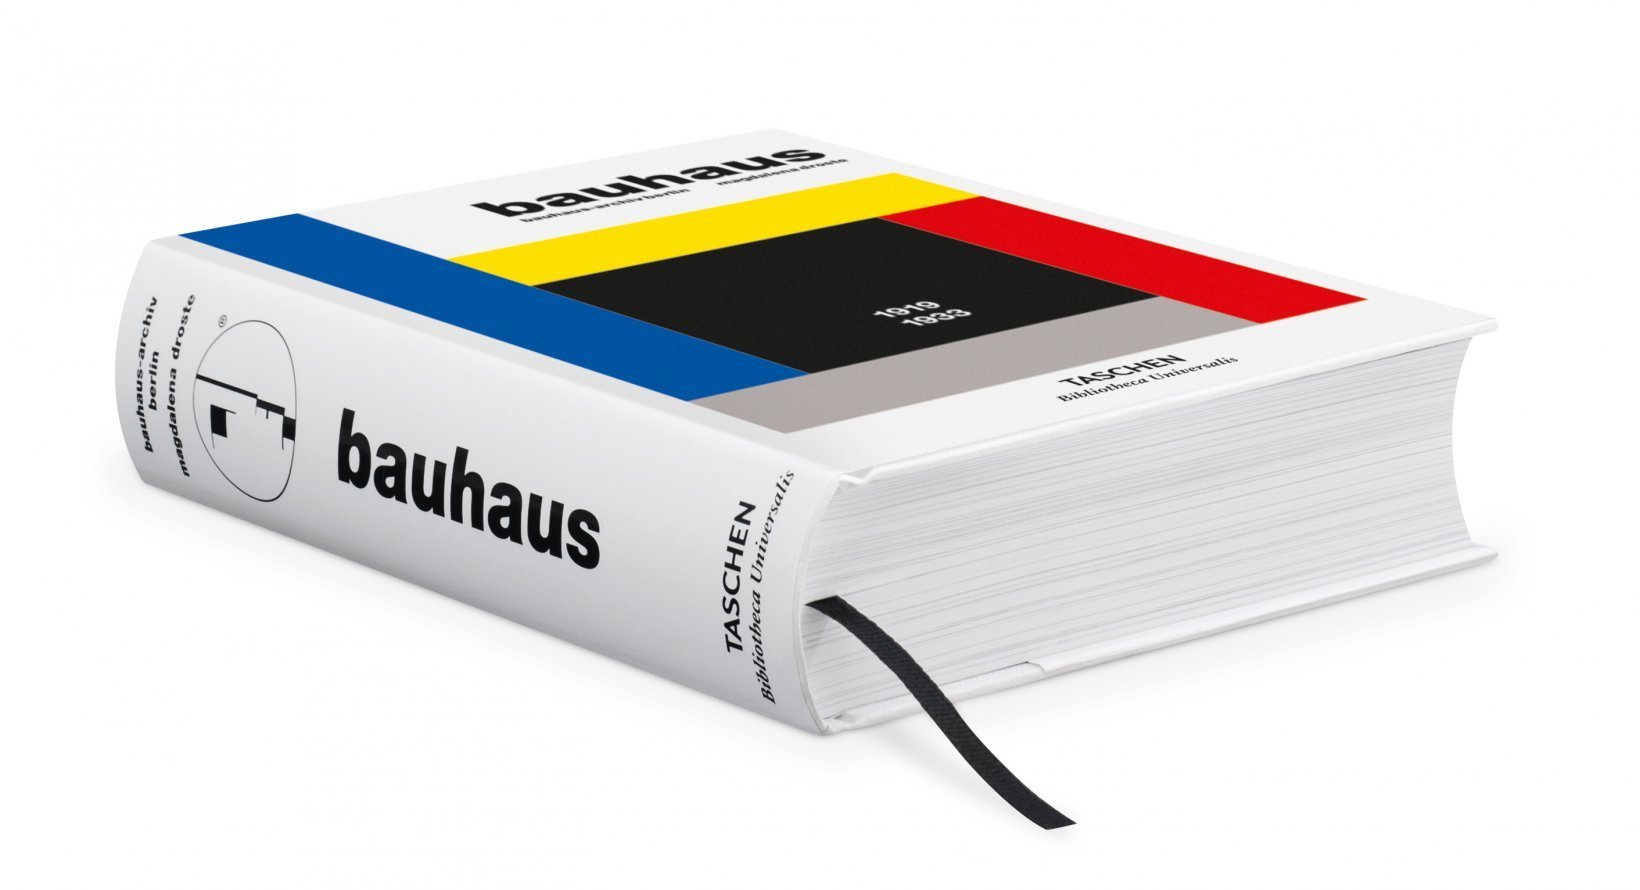 Taschen Verlag Bauhaus